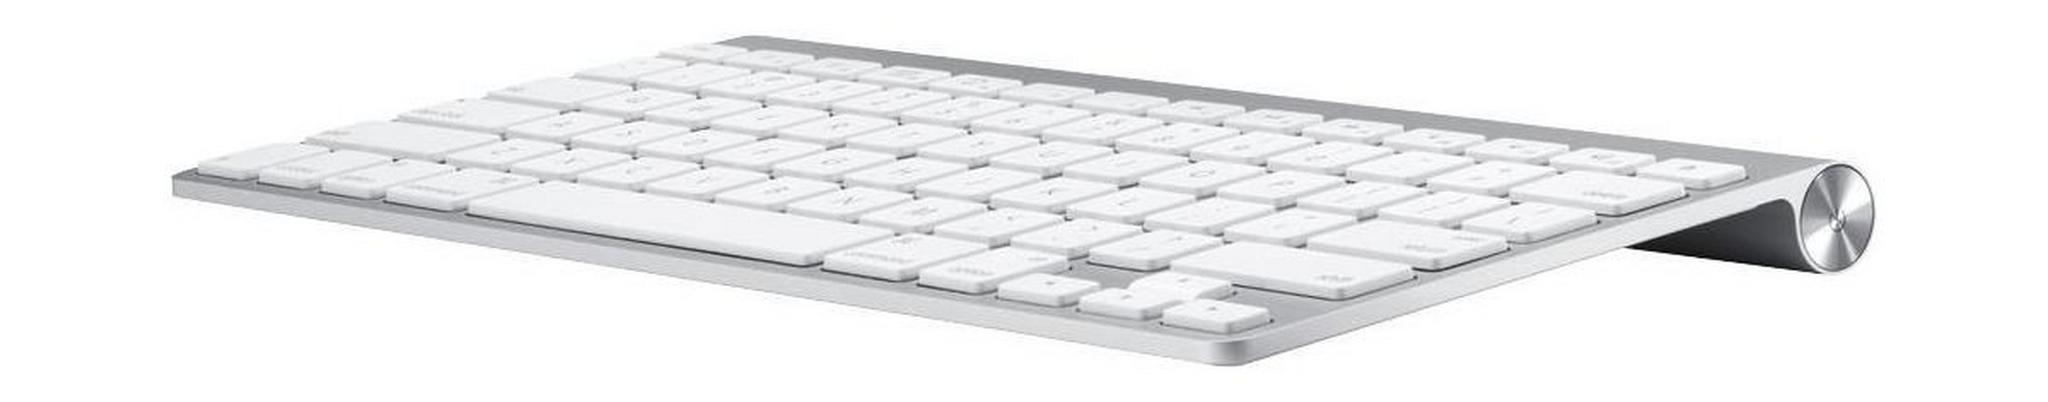 لوحة المفاتيح اللاسلكية أبل (أم سي ١٨٤ أل أل/أيه) - بيضاء